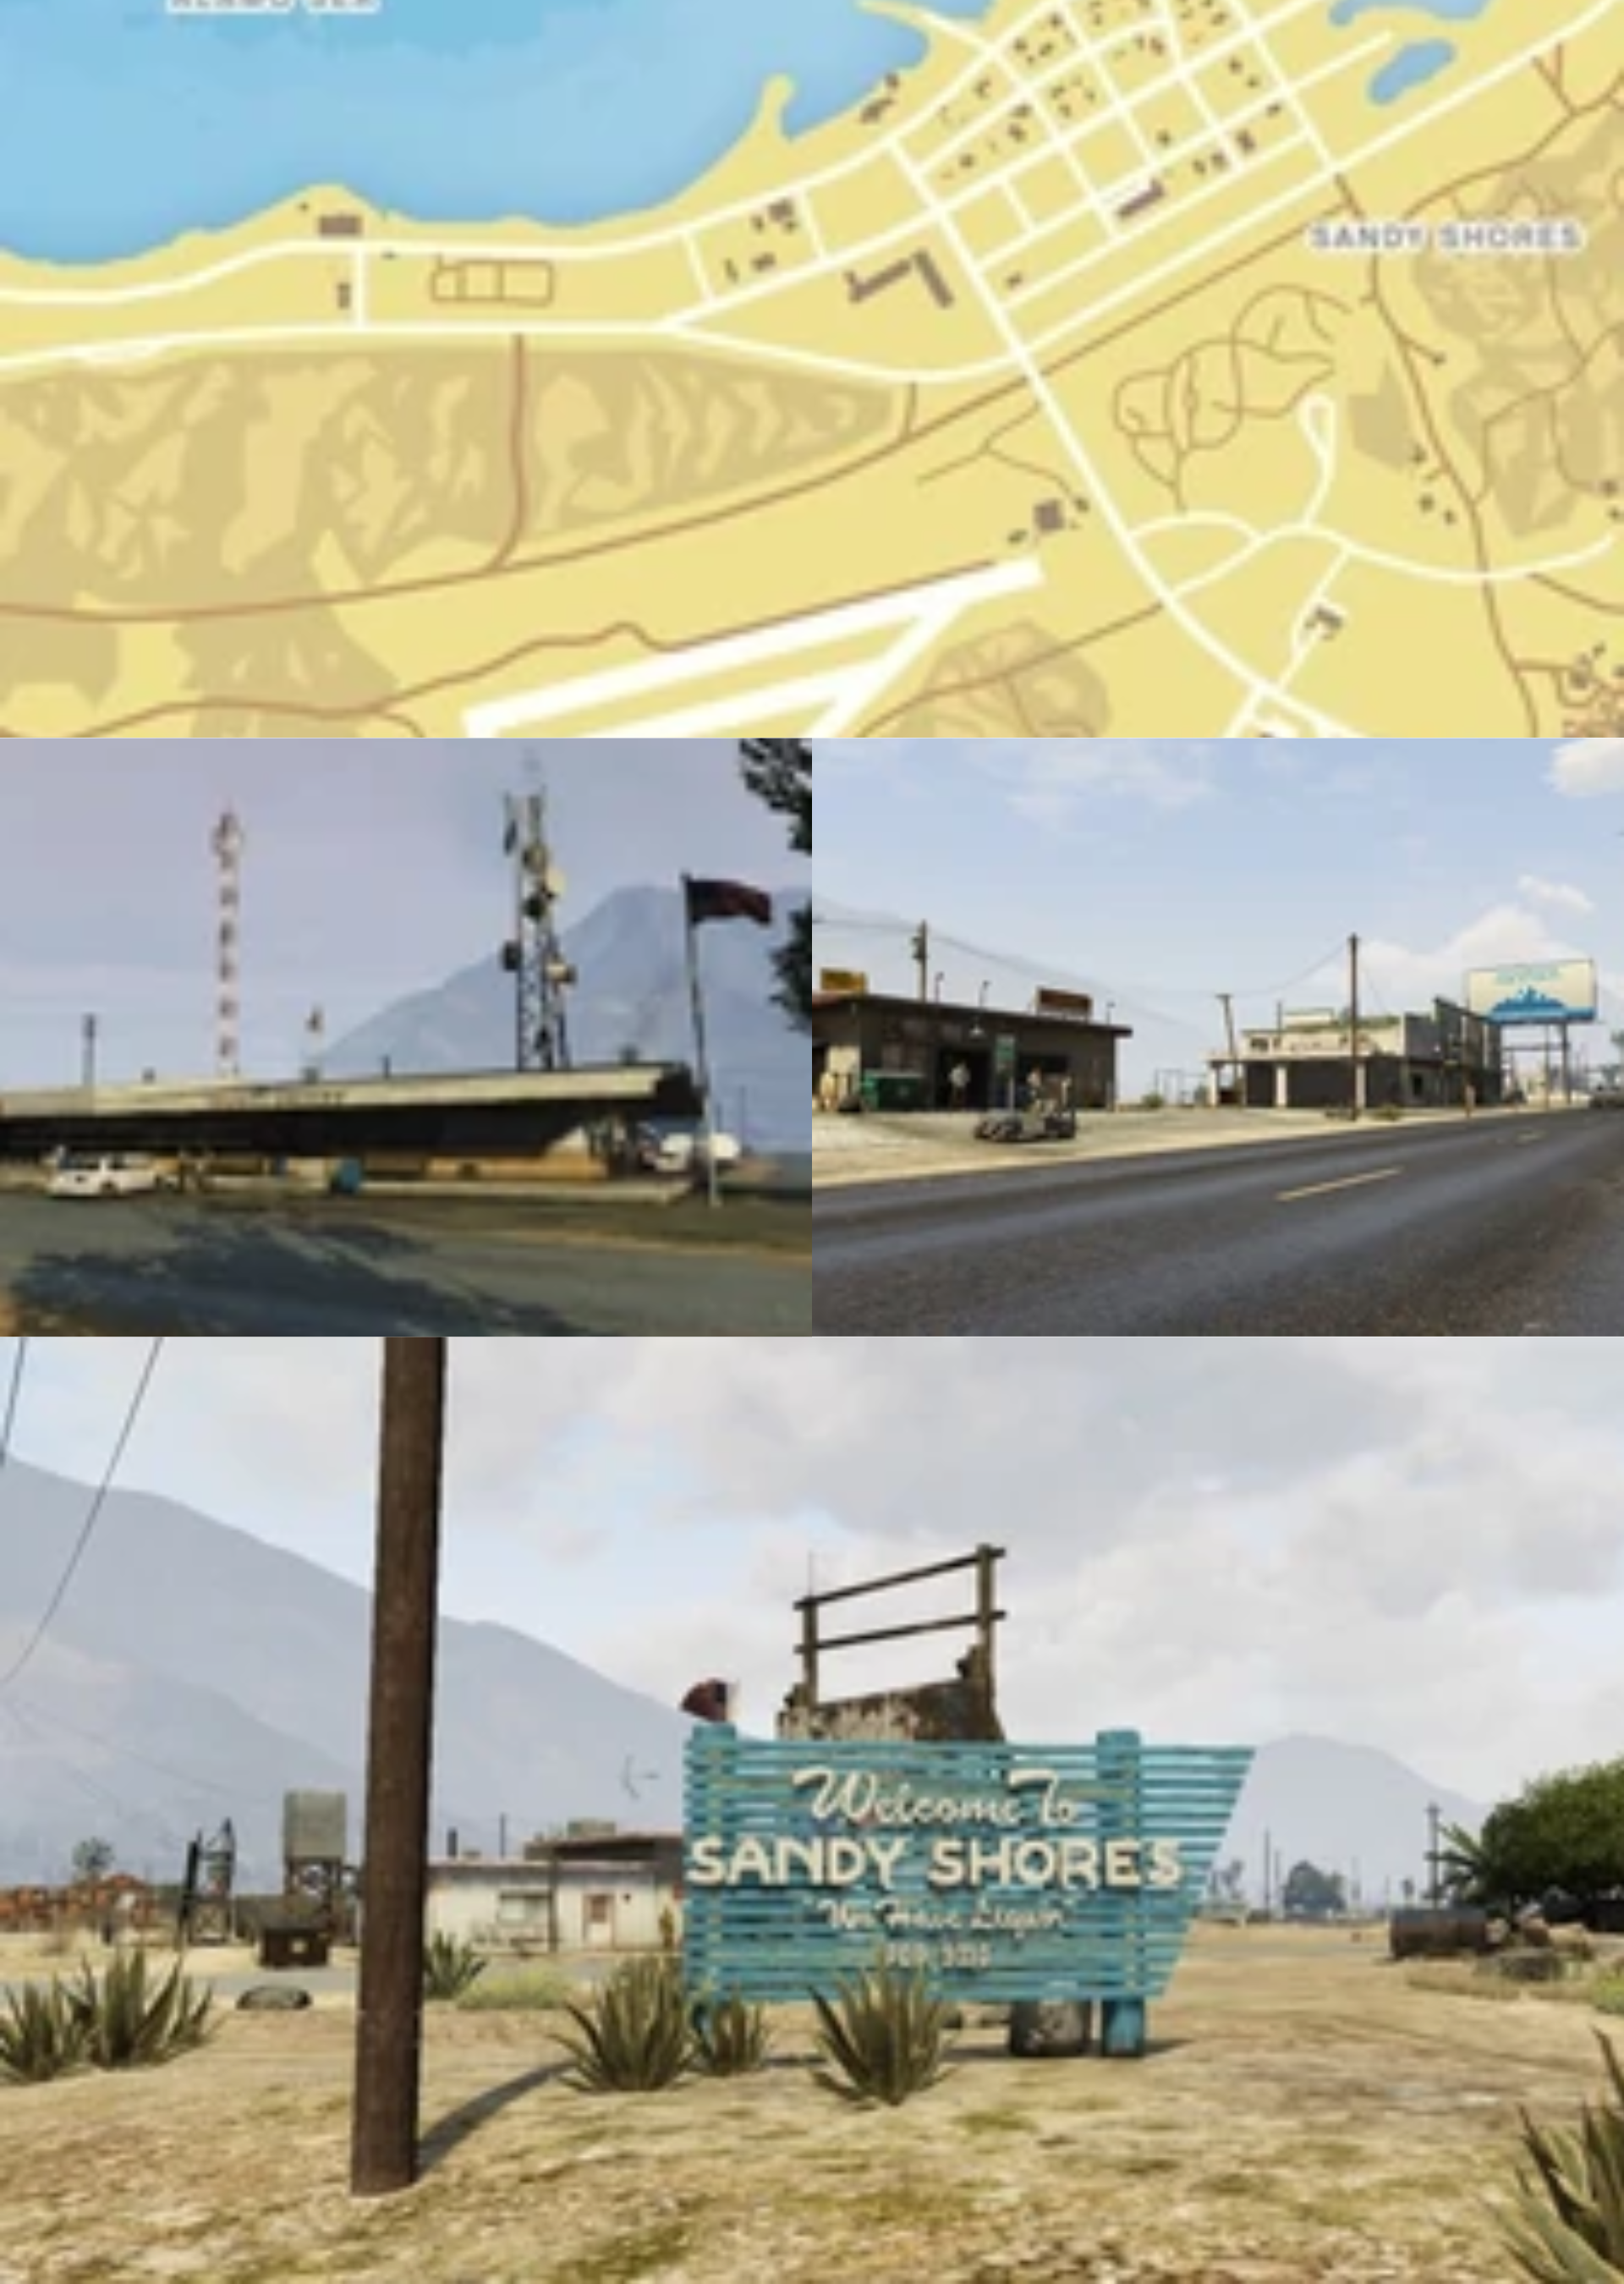 Estas son las localizaciones reales de GTA V - Grand Theft Auto V - 3DJuegos